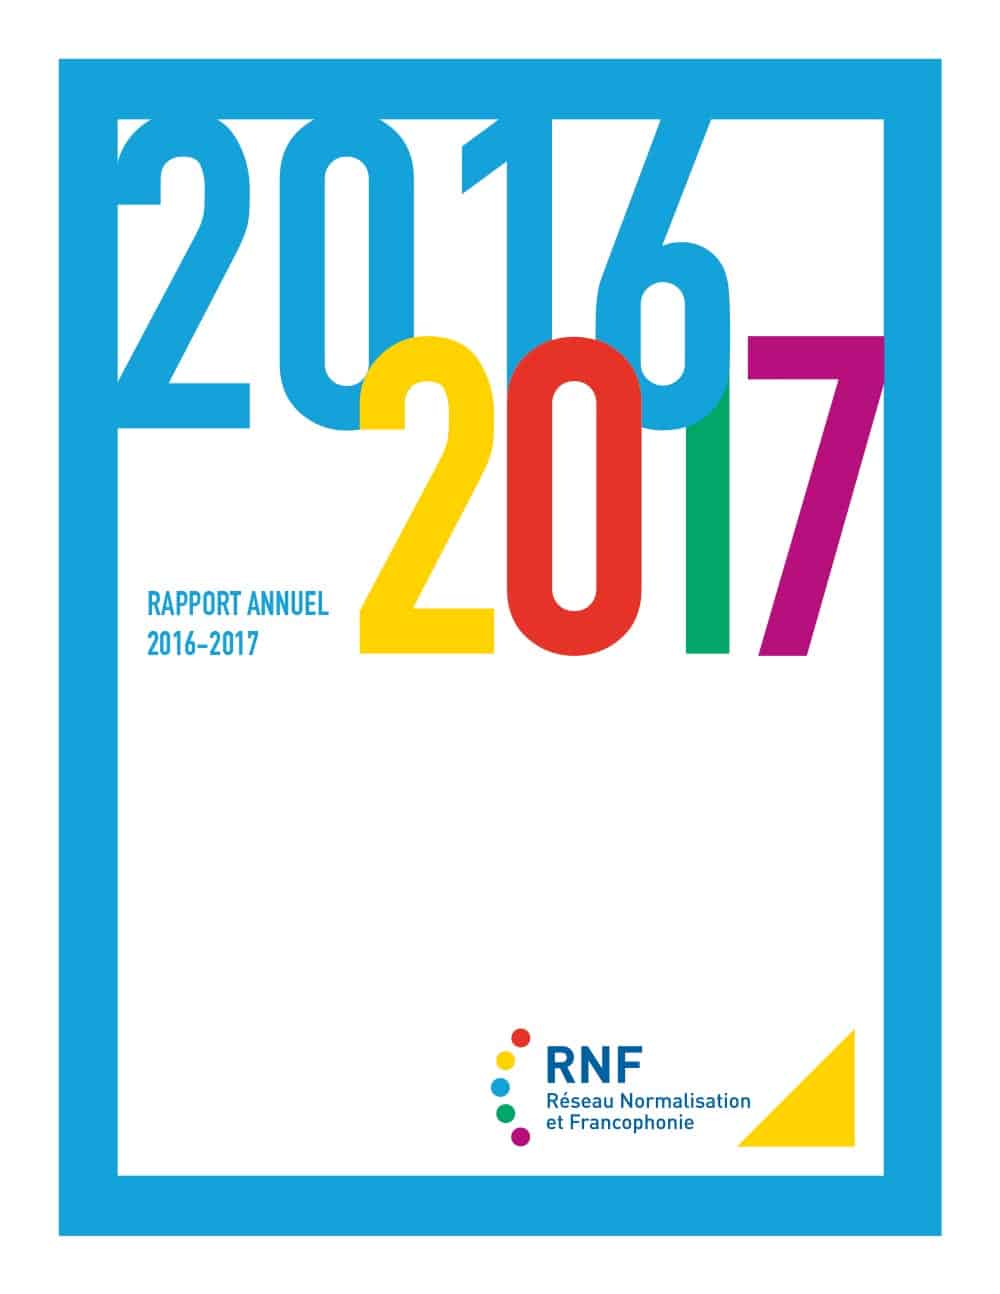 Graphisme du rapport annuel 2016-2017 du RNF